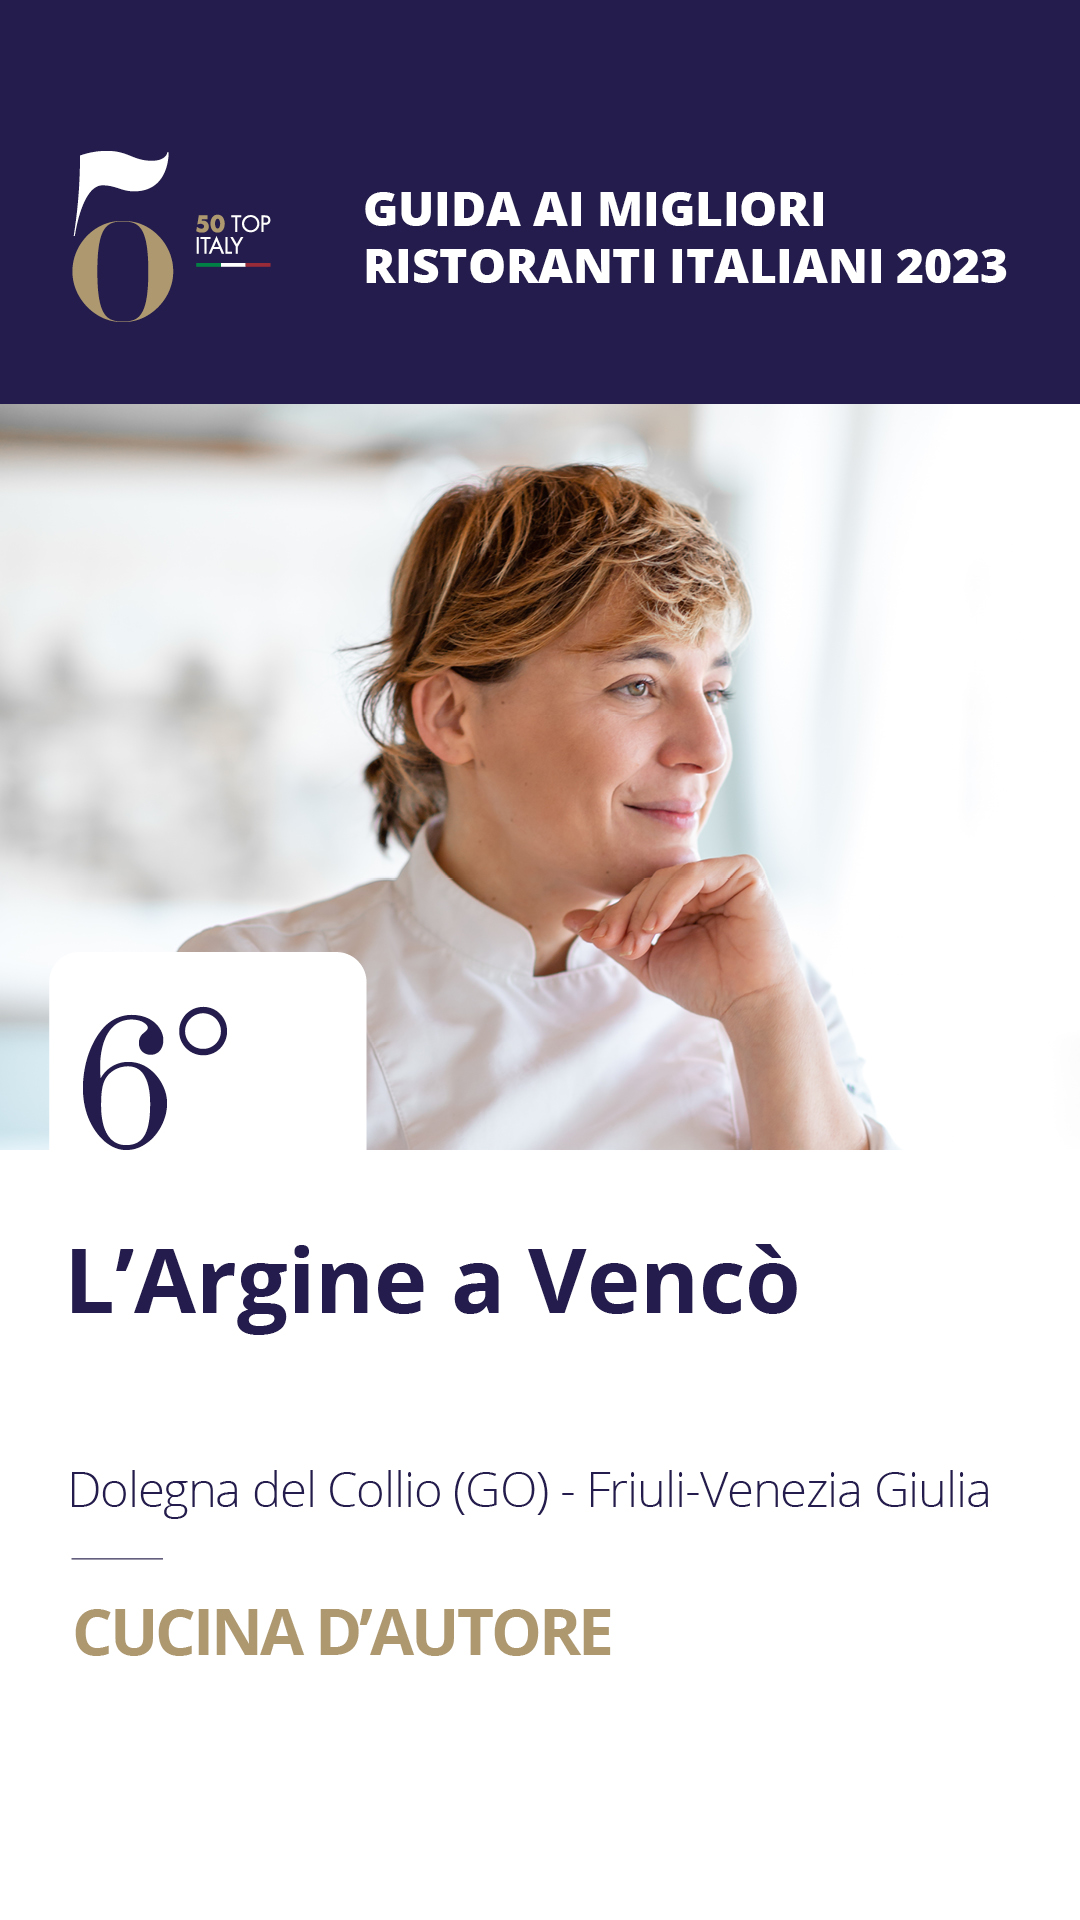 6 - L'Argine a Vencò